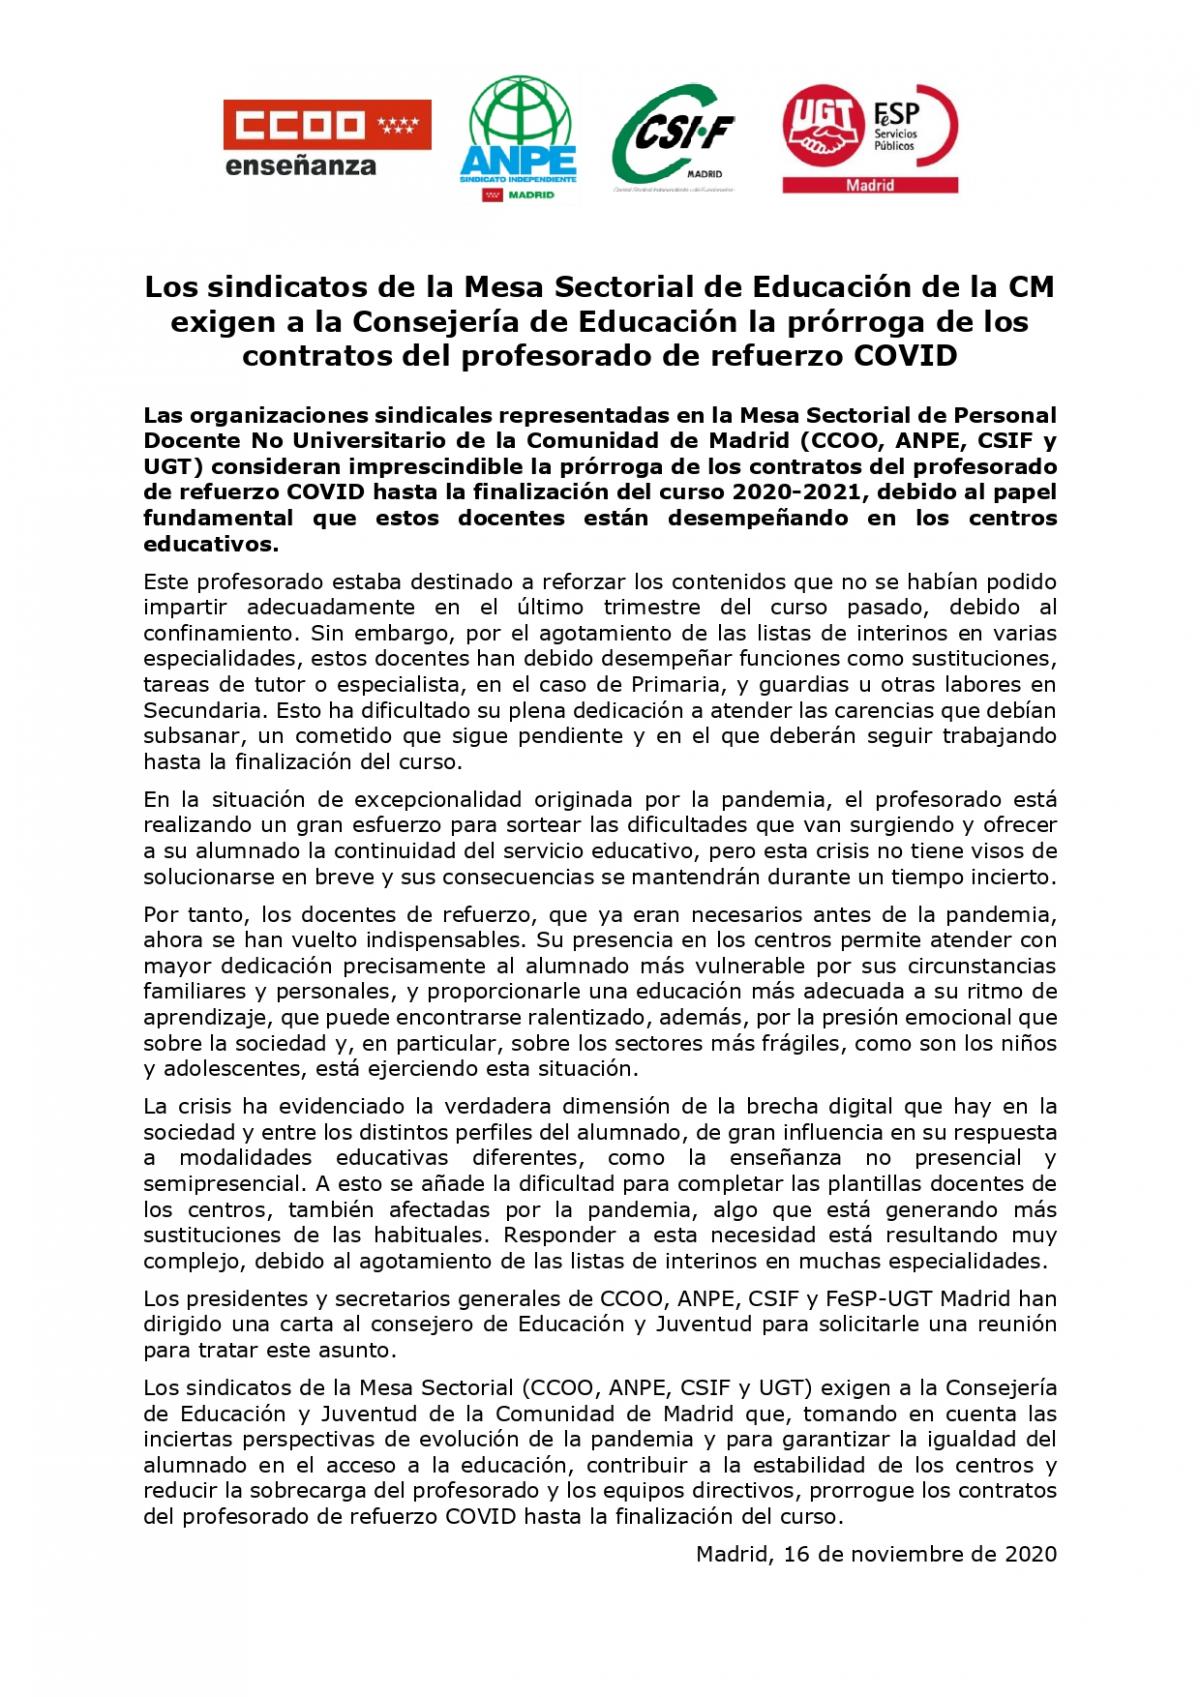 Los sindicatos de la Mesa Sectorial de Educación exigen a la Consejería de Educación la prórroga de los contratos del profesorado de refuerzo COVID